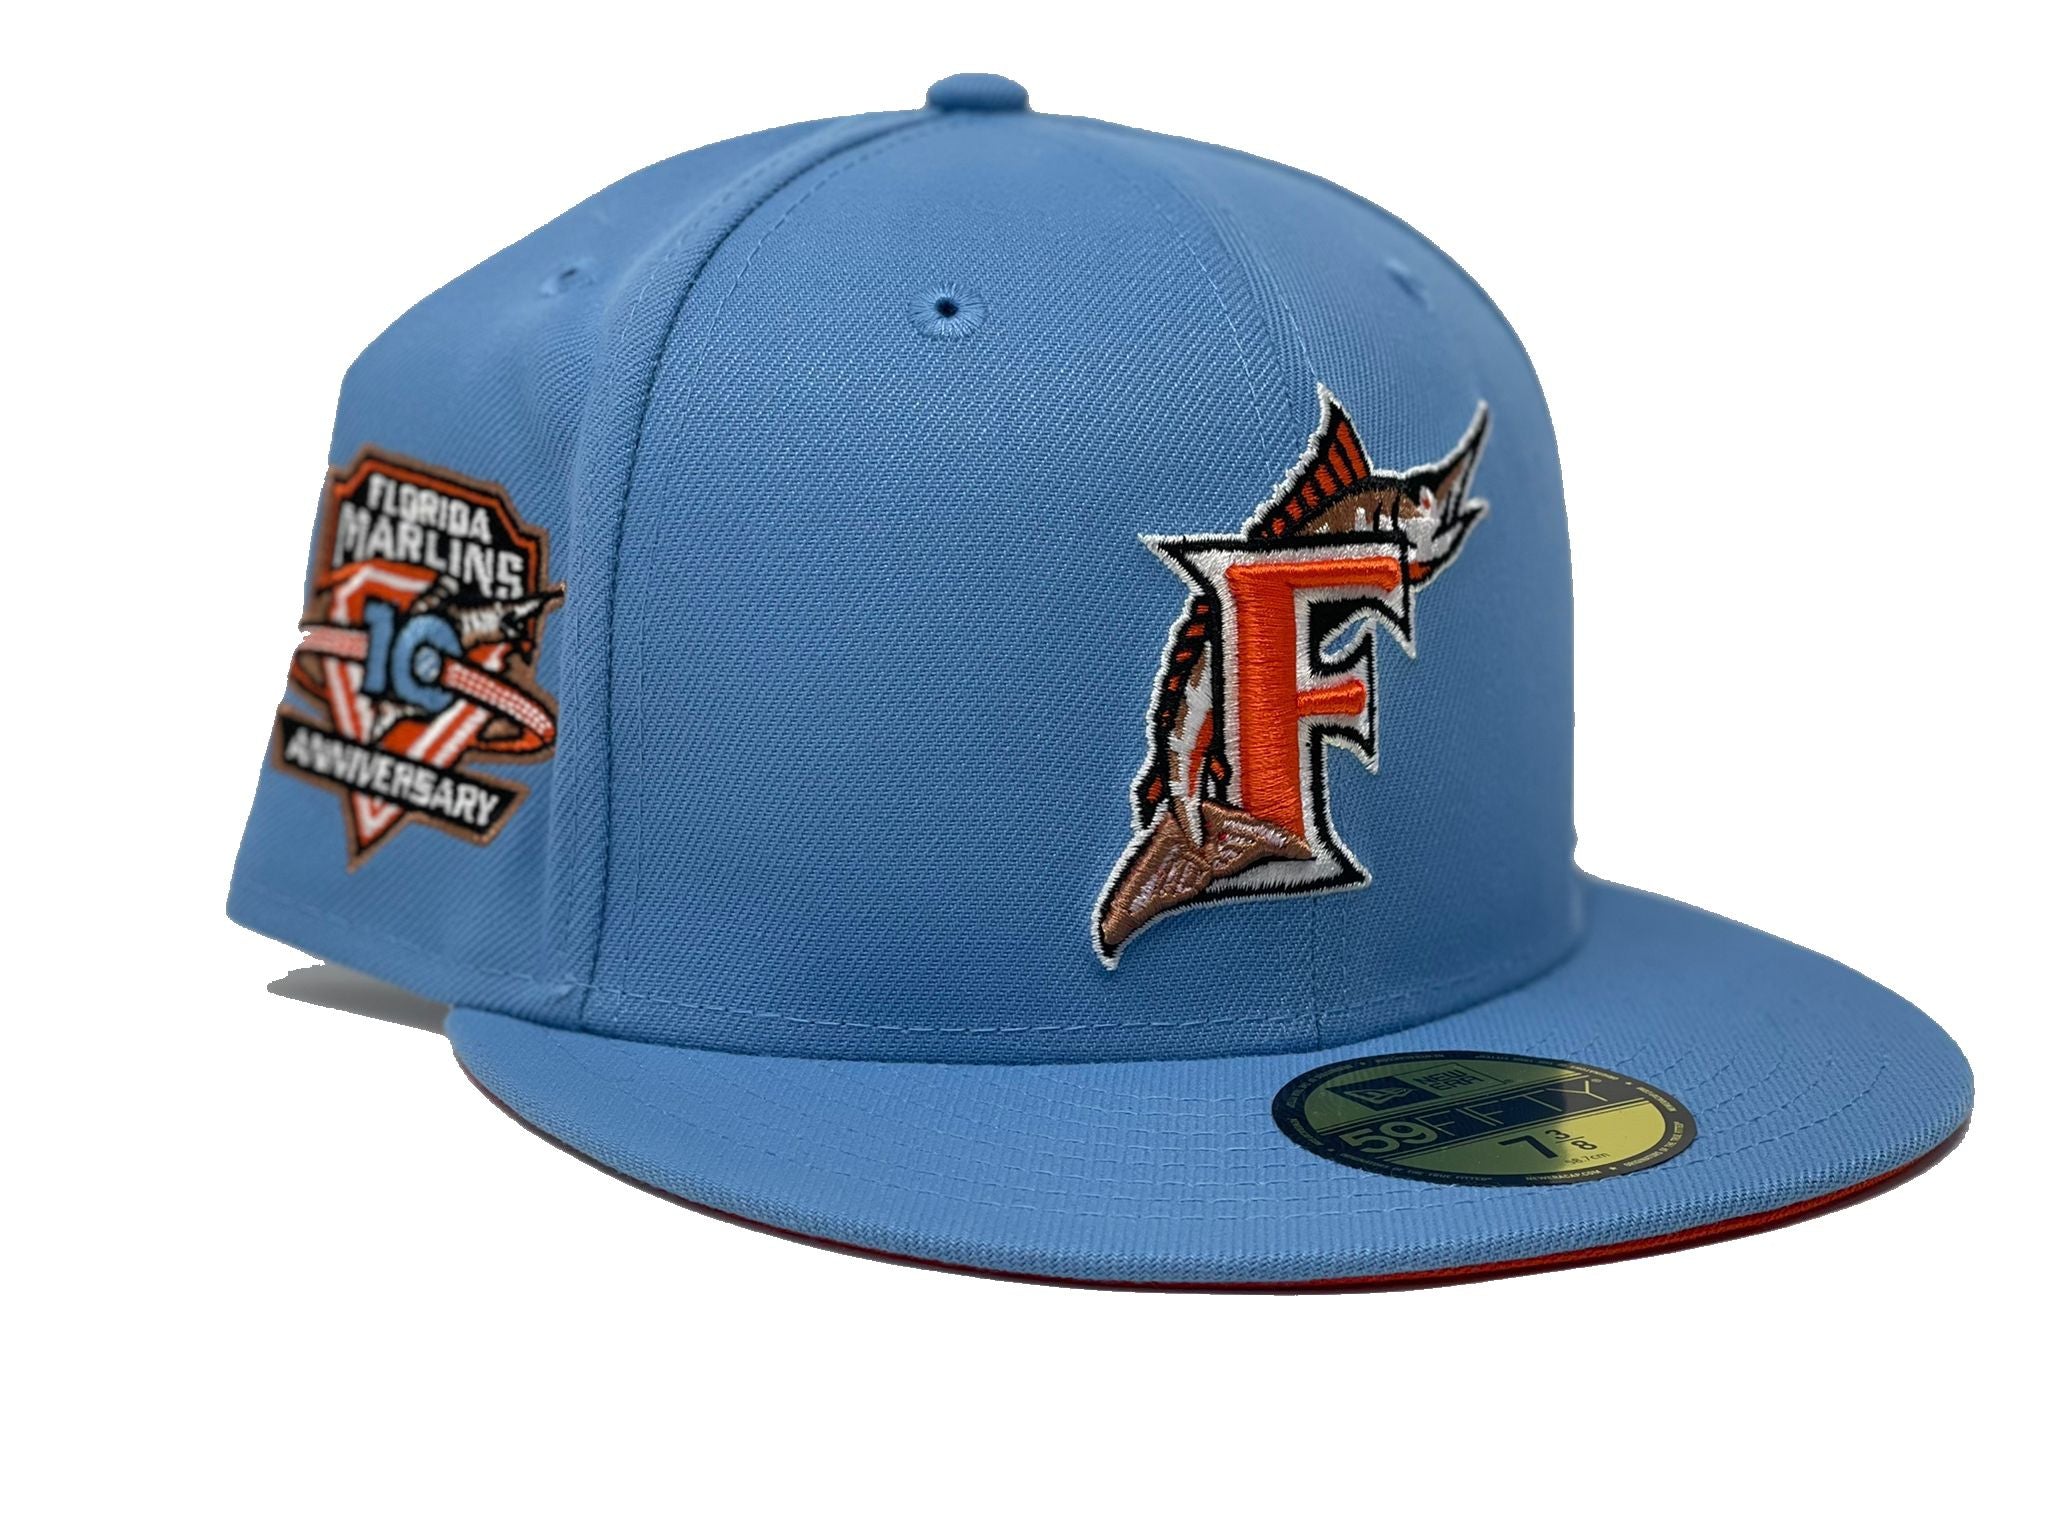 New Era Cap Hats for sale in Oceanport, New Jersey